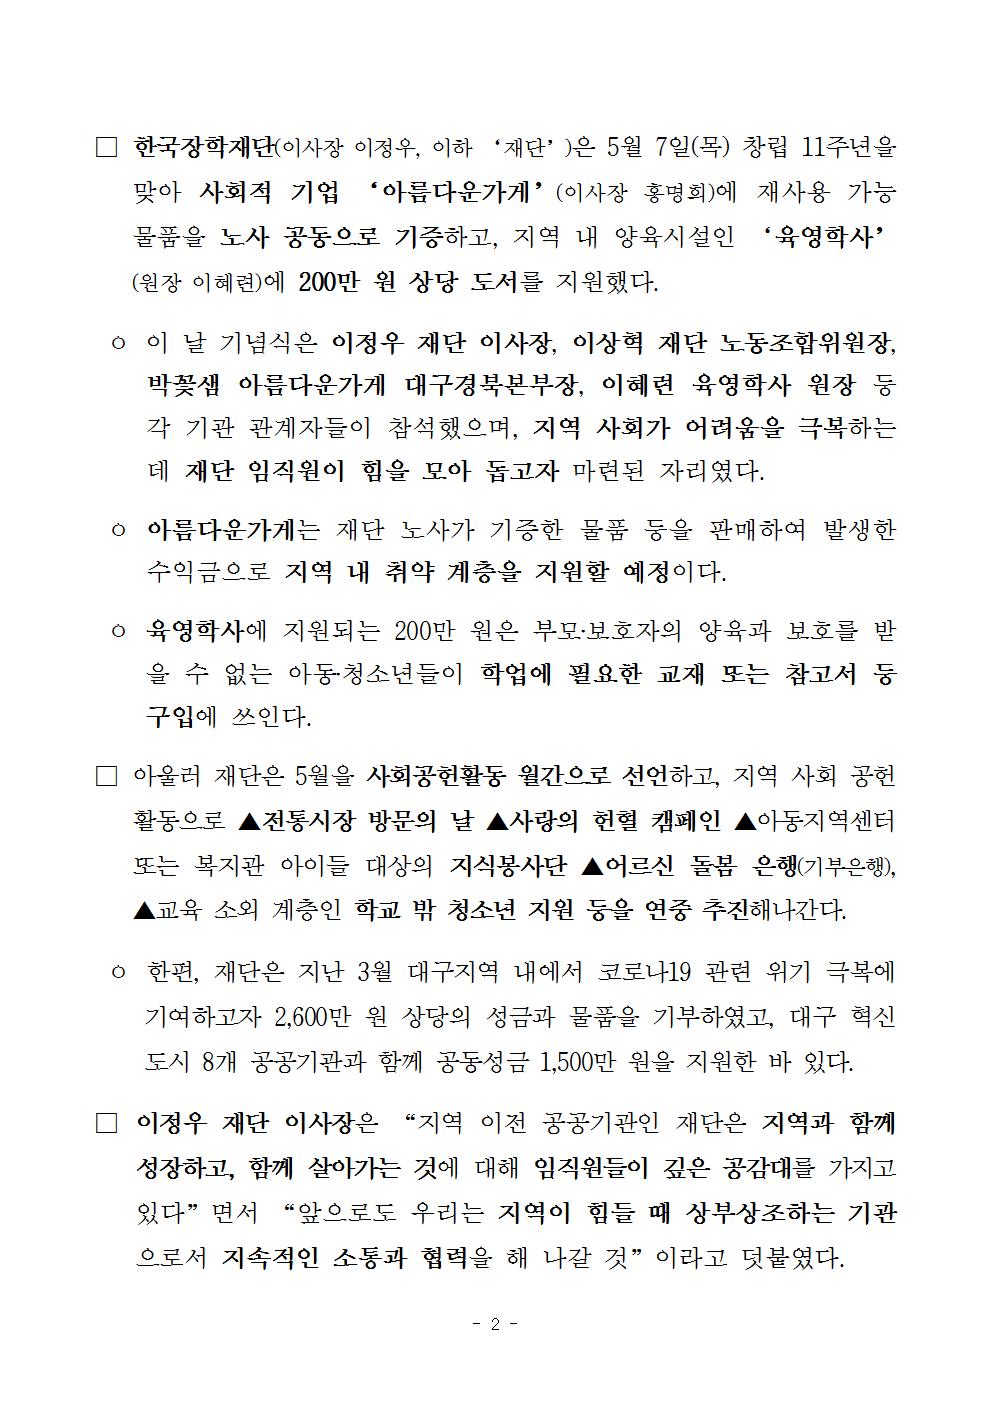 05-07(목)[보도자료] 한국장학재단 창립 11주년 기념 취약계층을 위한 사회공헌활동 전개002.jpg